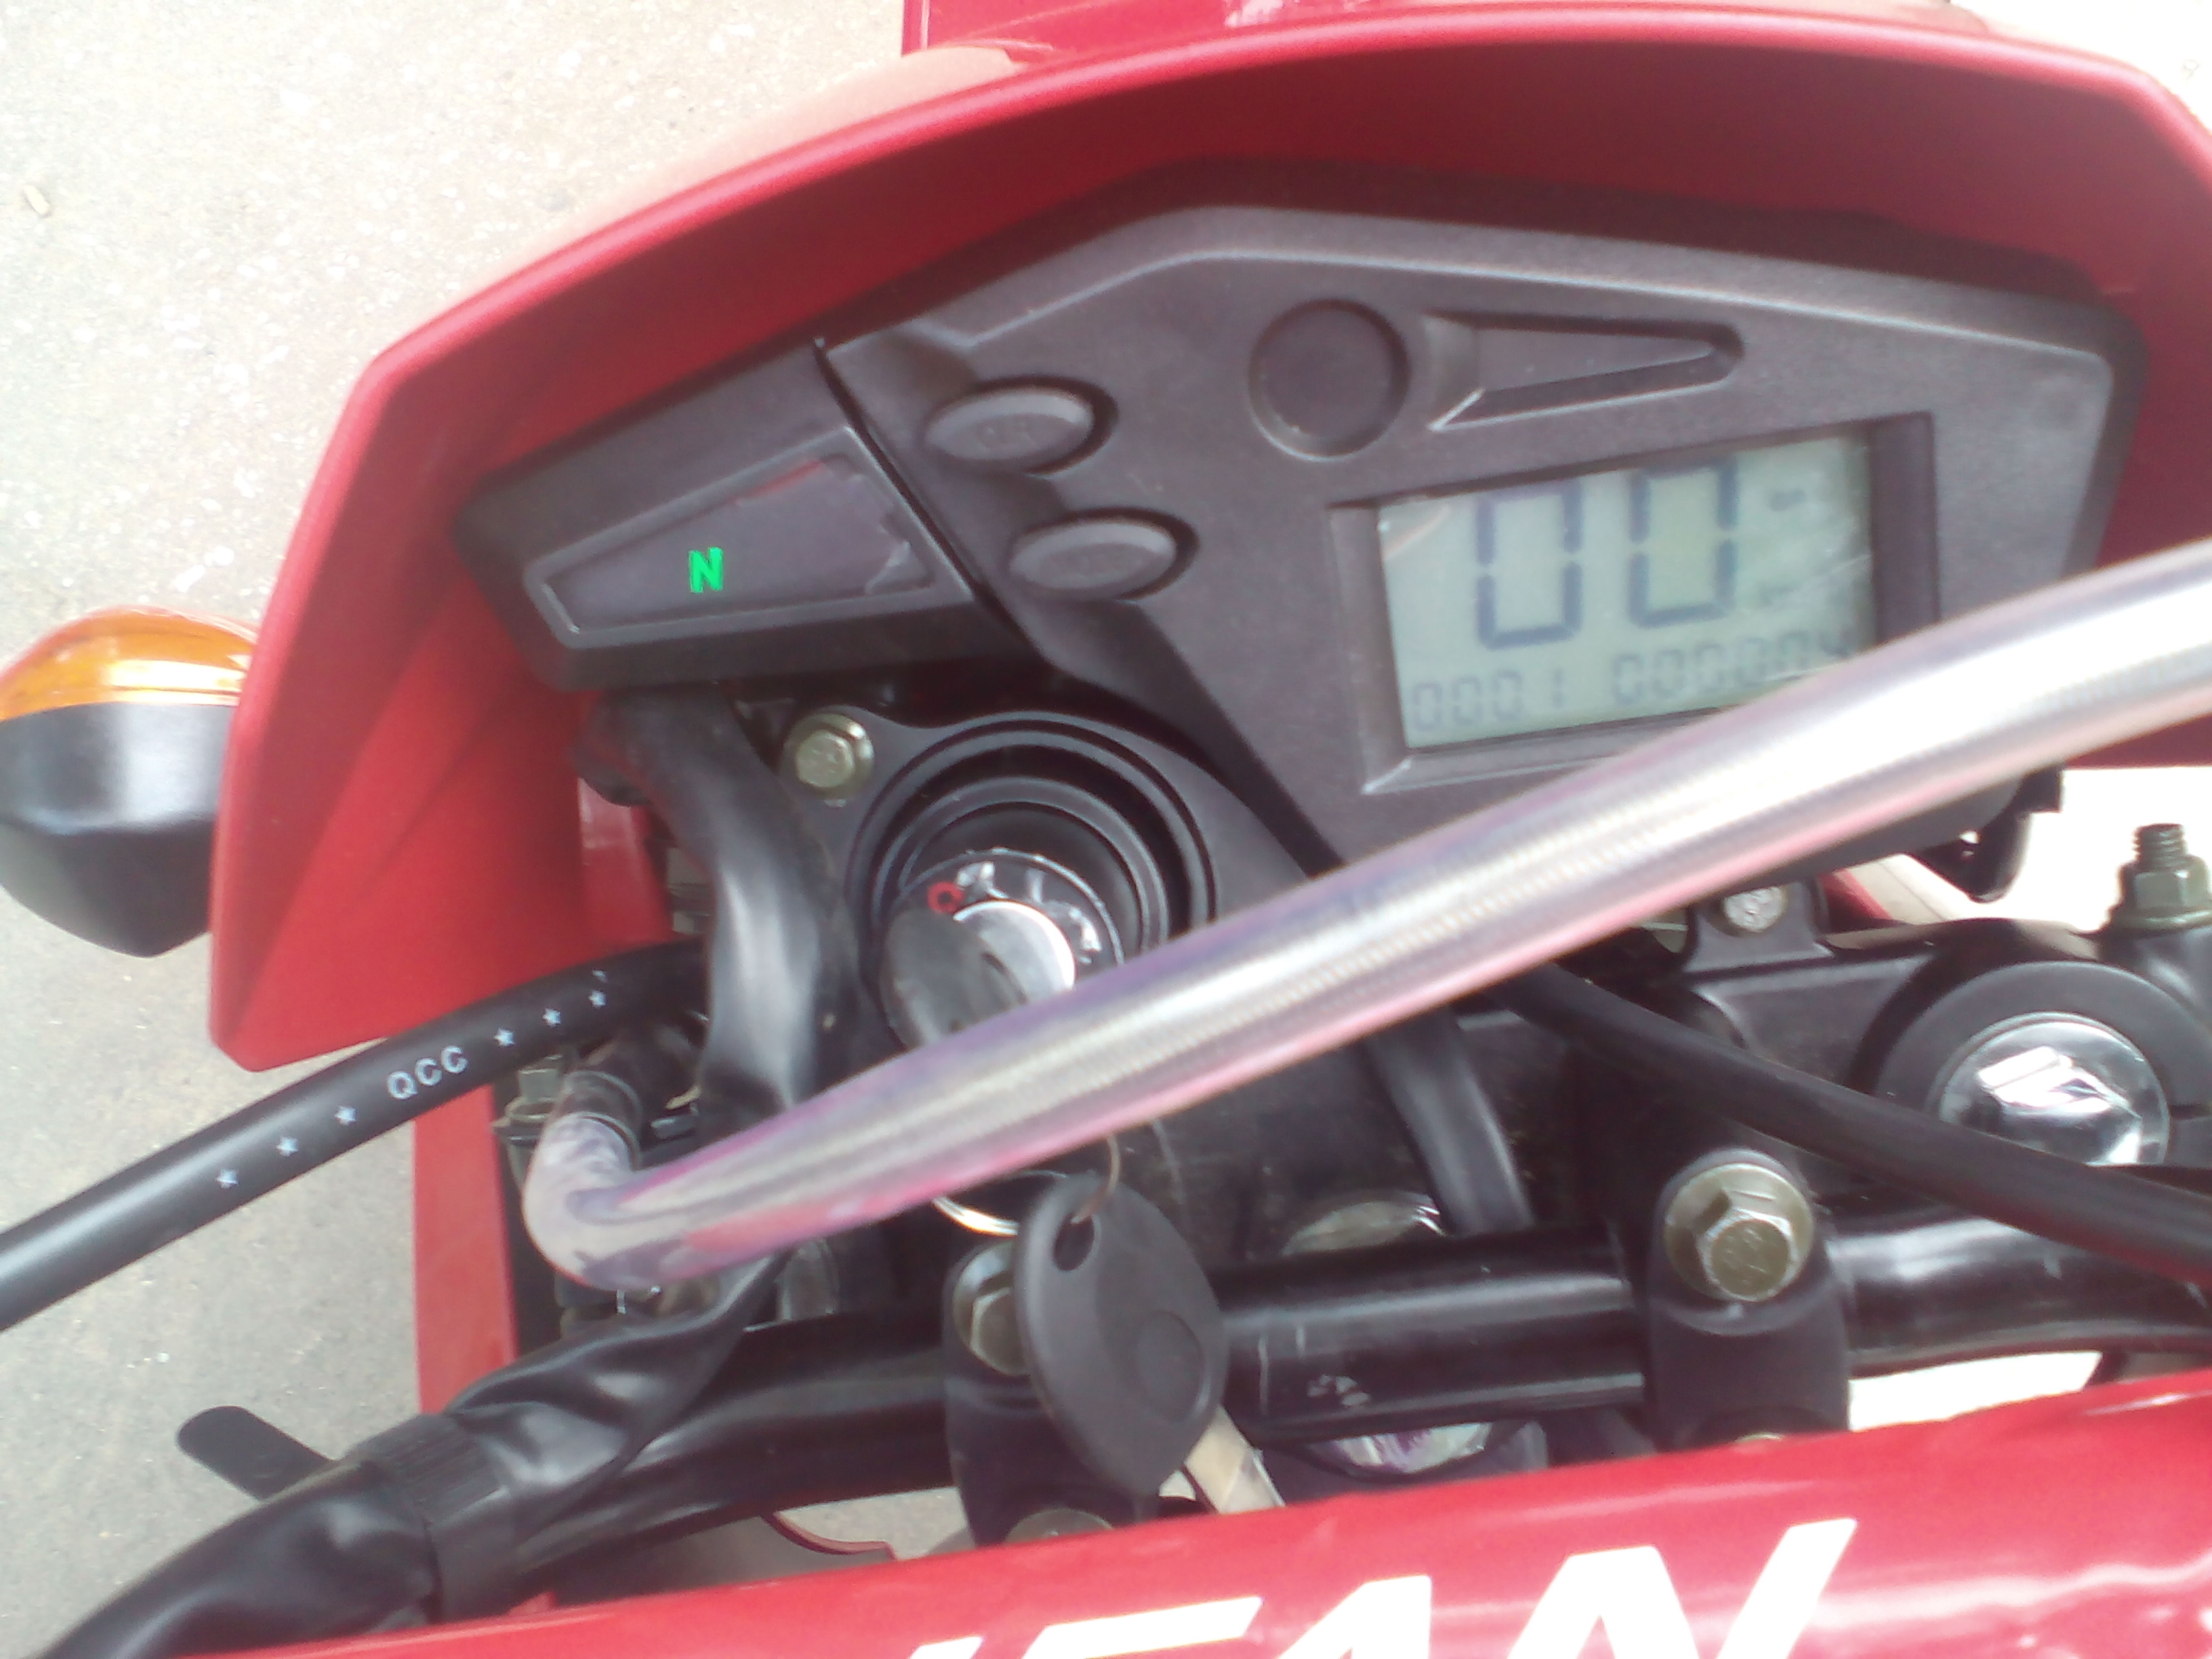 мотоцикл Lifan LF200gy-3b приборка, фото